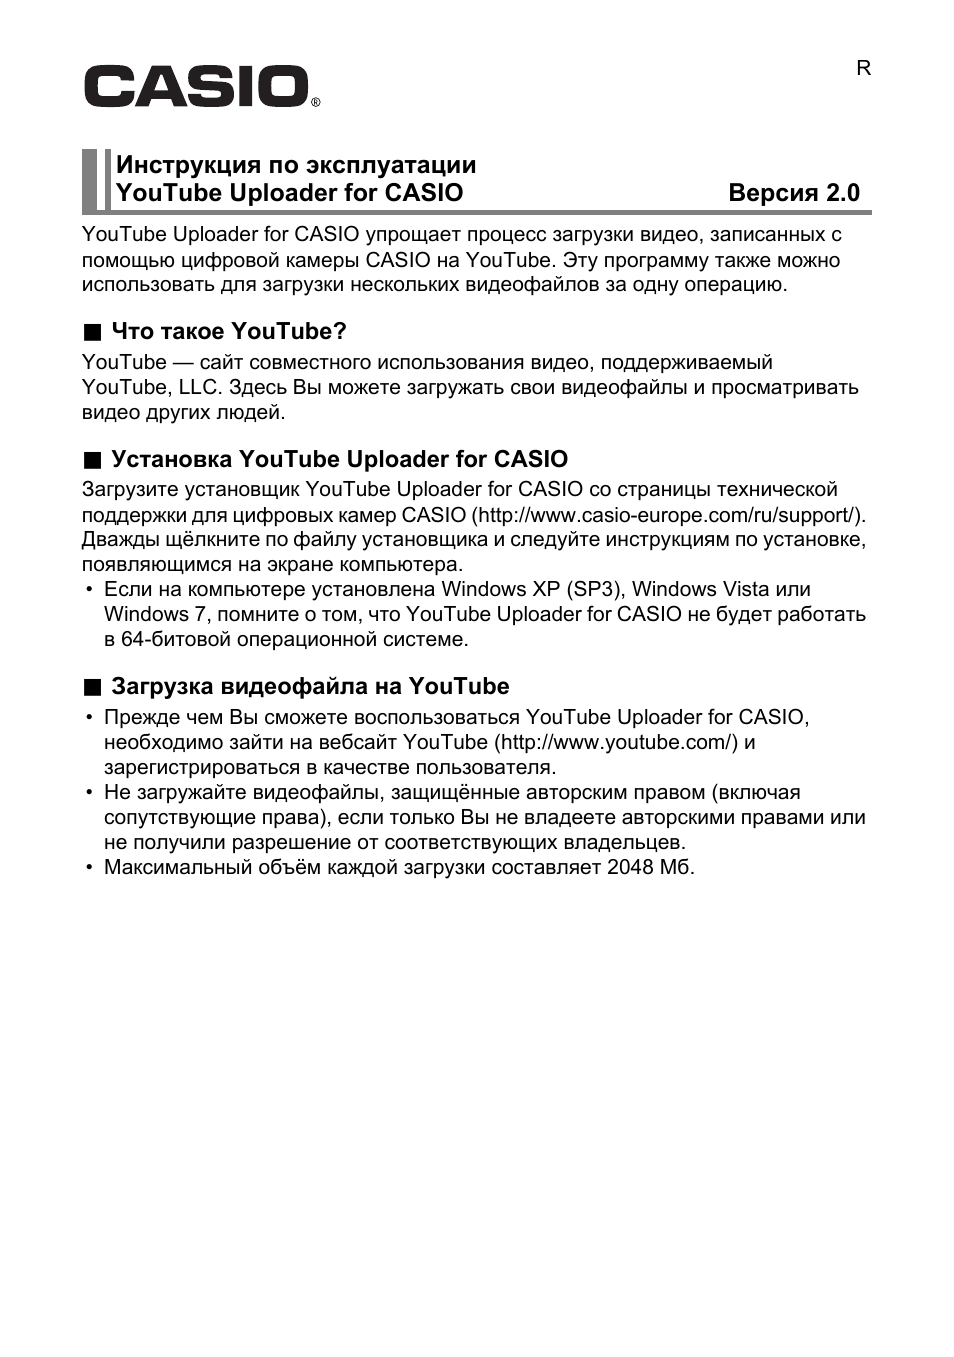 Инструкция по эксплуатации Casio EXILIM YouTube Uploader for CASIO | 2 страницы